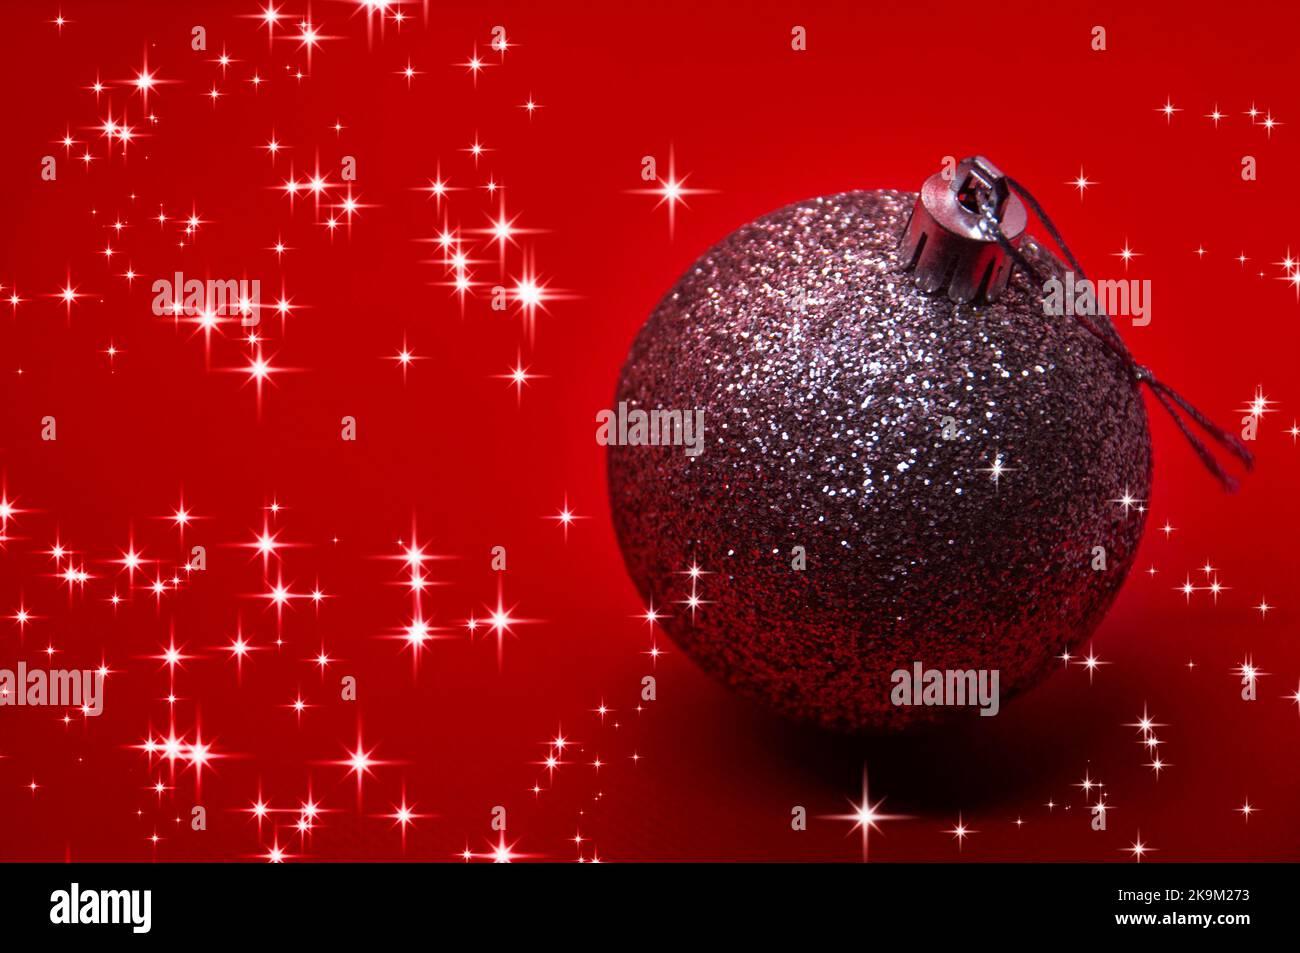 Silberner Weihnachtsball auf rotem Hintergrund, umgeben von leuchtenden Sternen. Weihnachtsfeier Konzept. Stockfoto